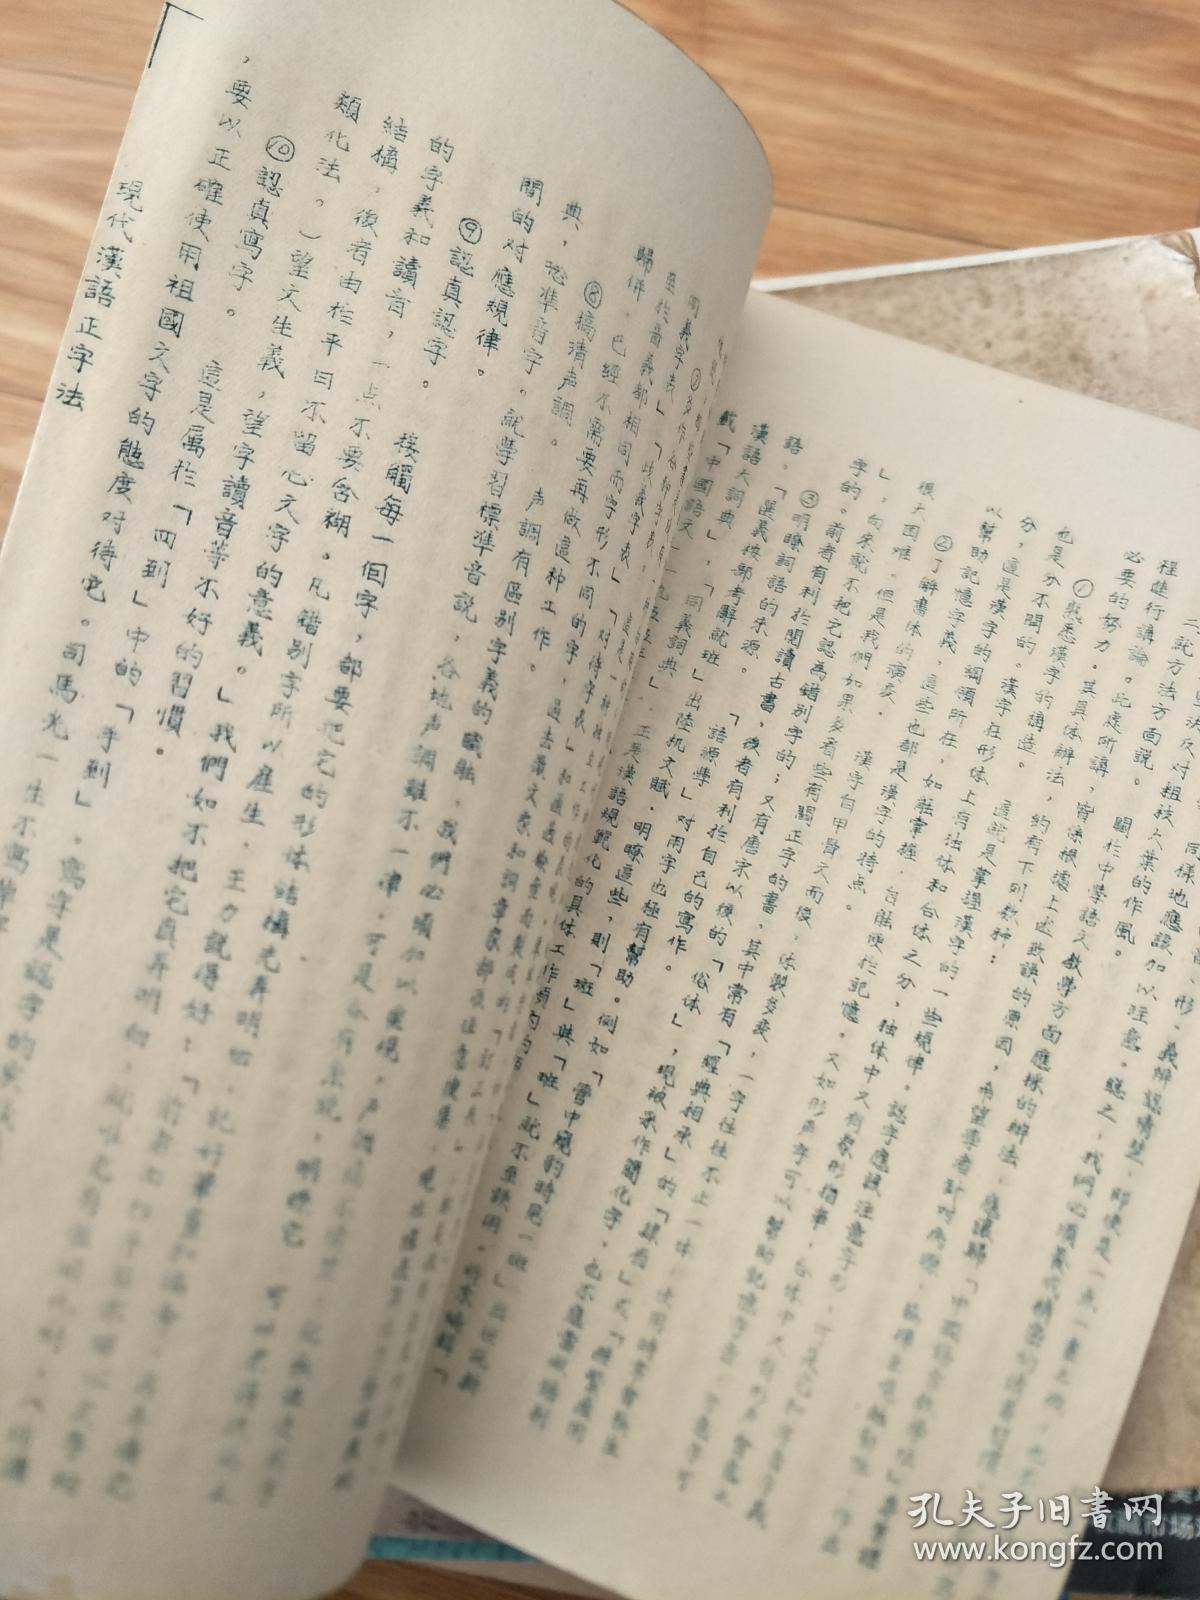 张煦侯1956年自编油印《现代汉语修辞学正字法》未正式印刷的稿本！